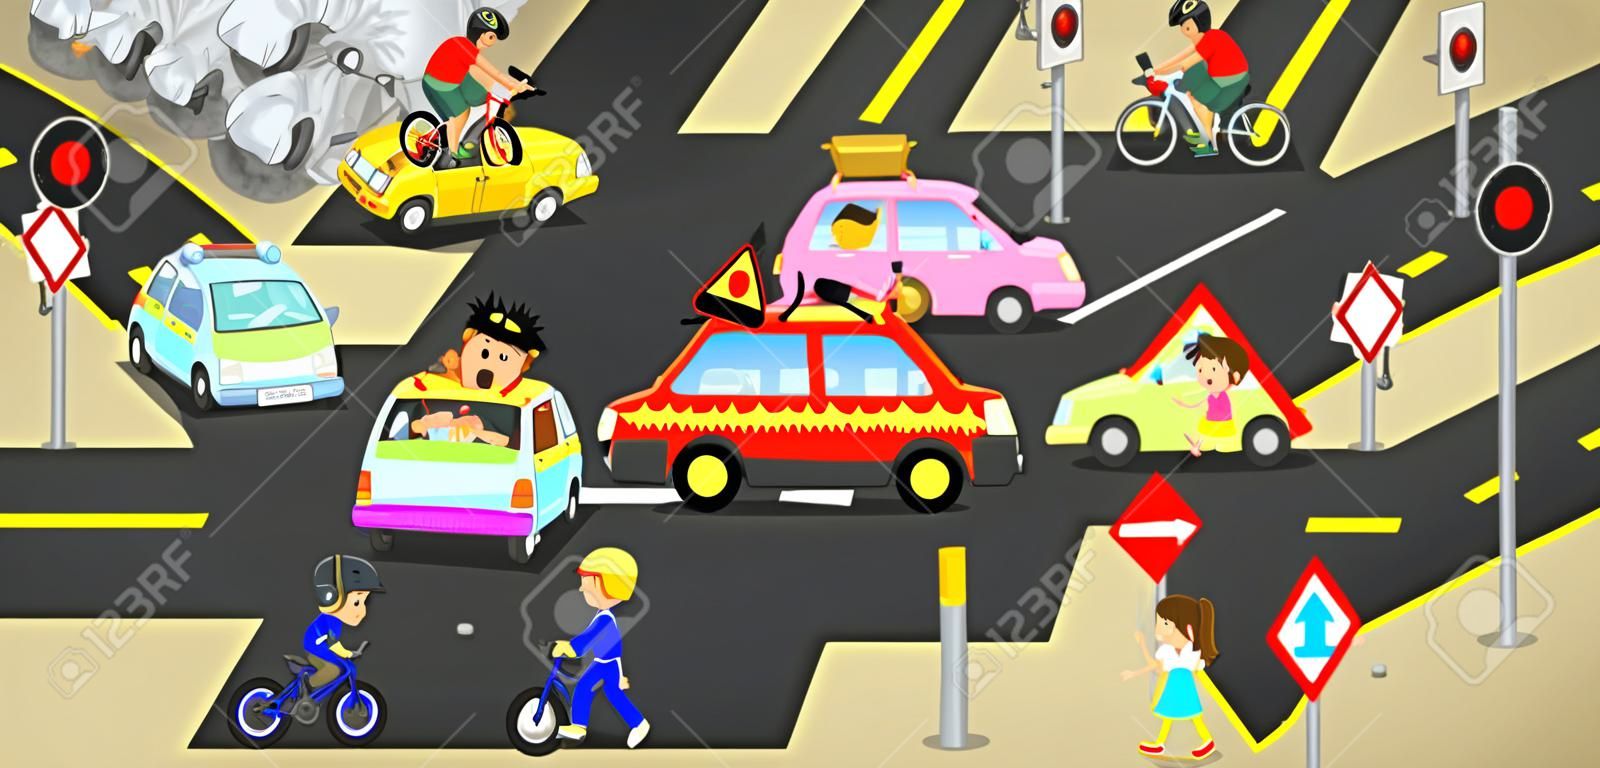 사고, 부상, 교통 도로 차량에 위험 및 안전주의 벡터에 의해 생성, 자동차, 자전거 및 아이들을위한 귀여운 재미있는 만화 개념 기호와 기호 도시 거리에 부주의 한 사람에 의해 야기